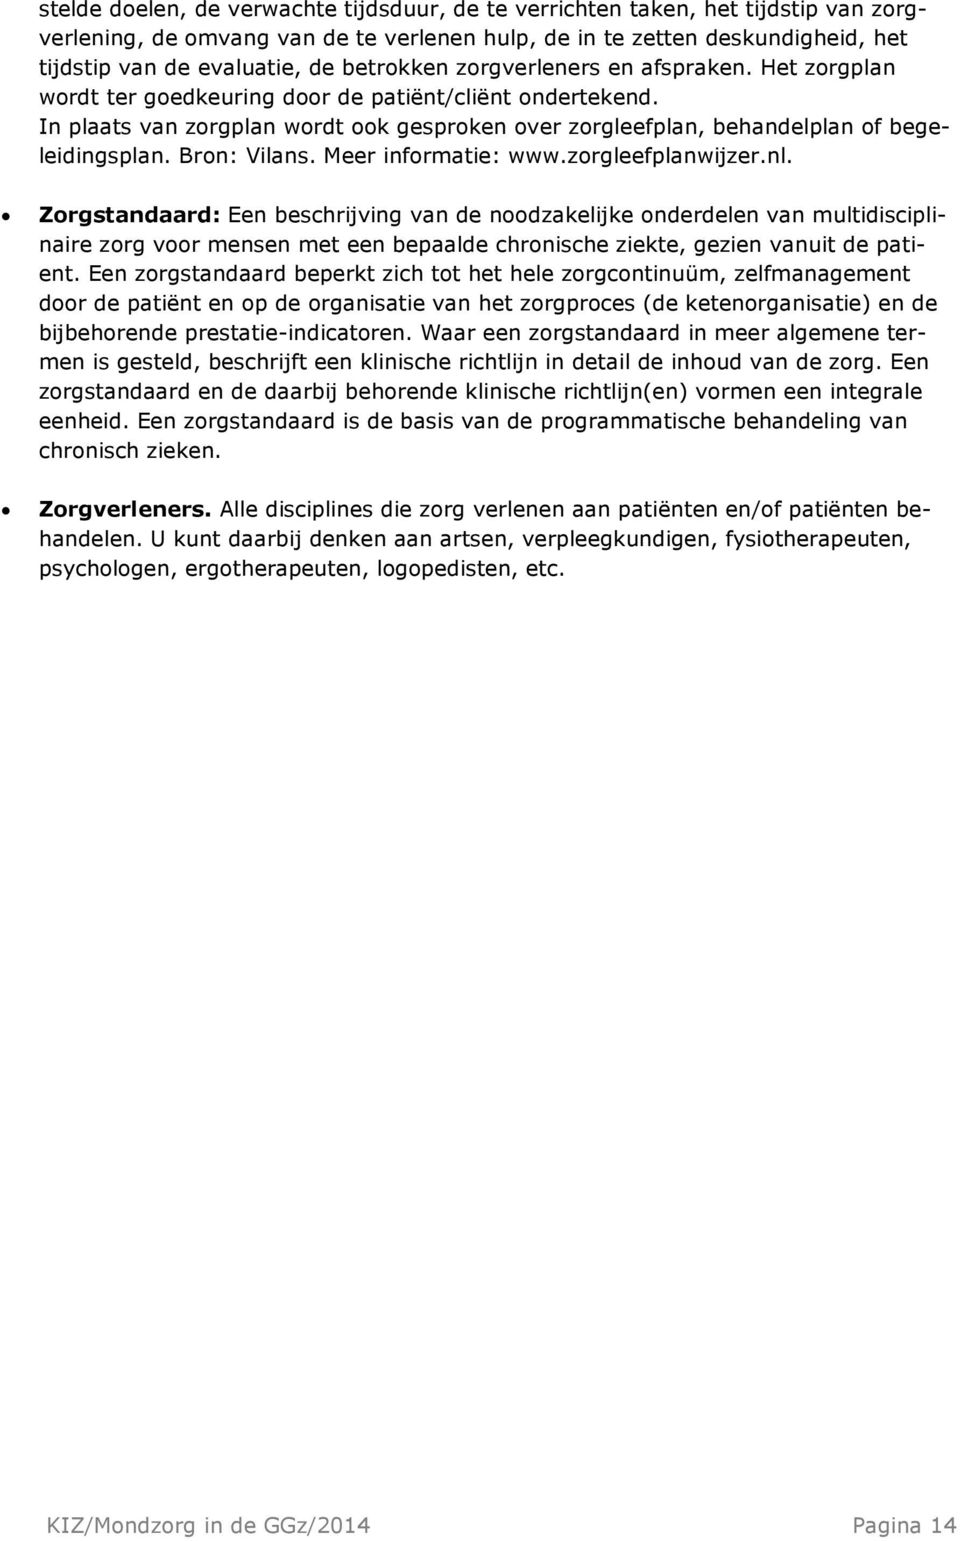 In plaats van zorgplan wordt ook gesproken over zorgleefplan, behandelplan of begeleidingsplan. Bron: Vilans. Meer informatie: www.zorgleefplanwijzer.nl.